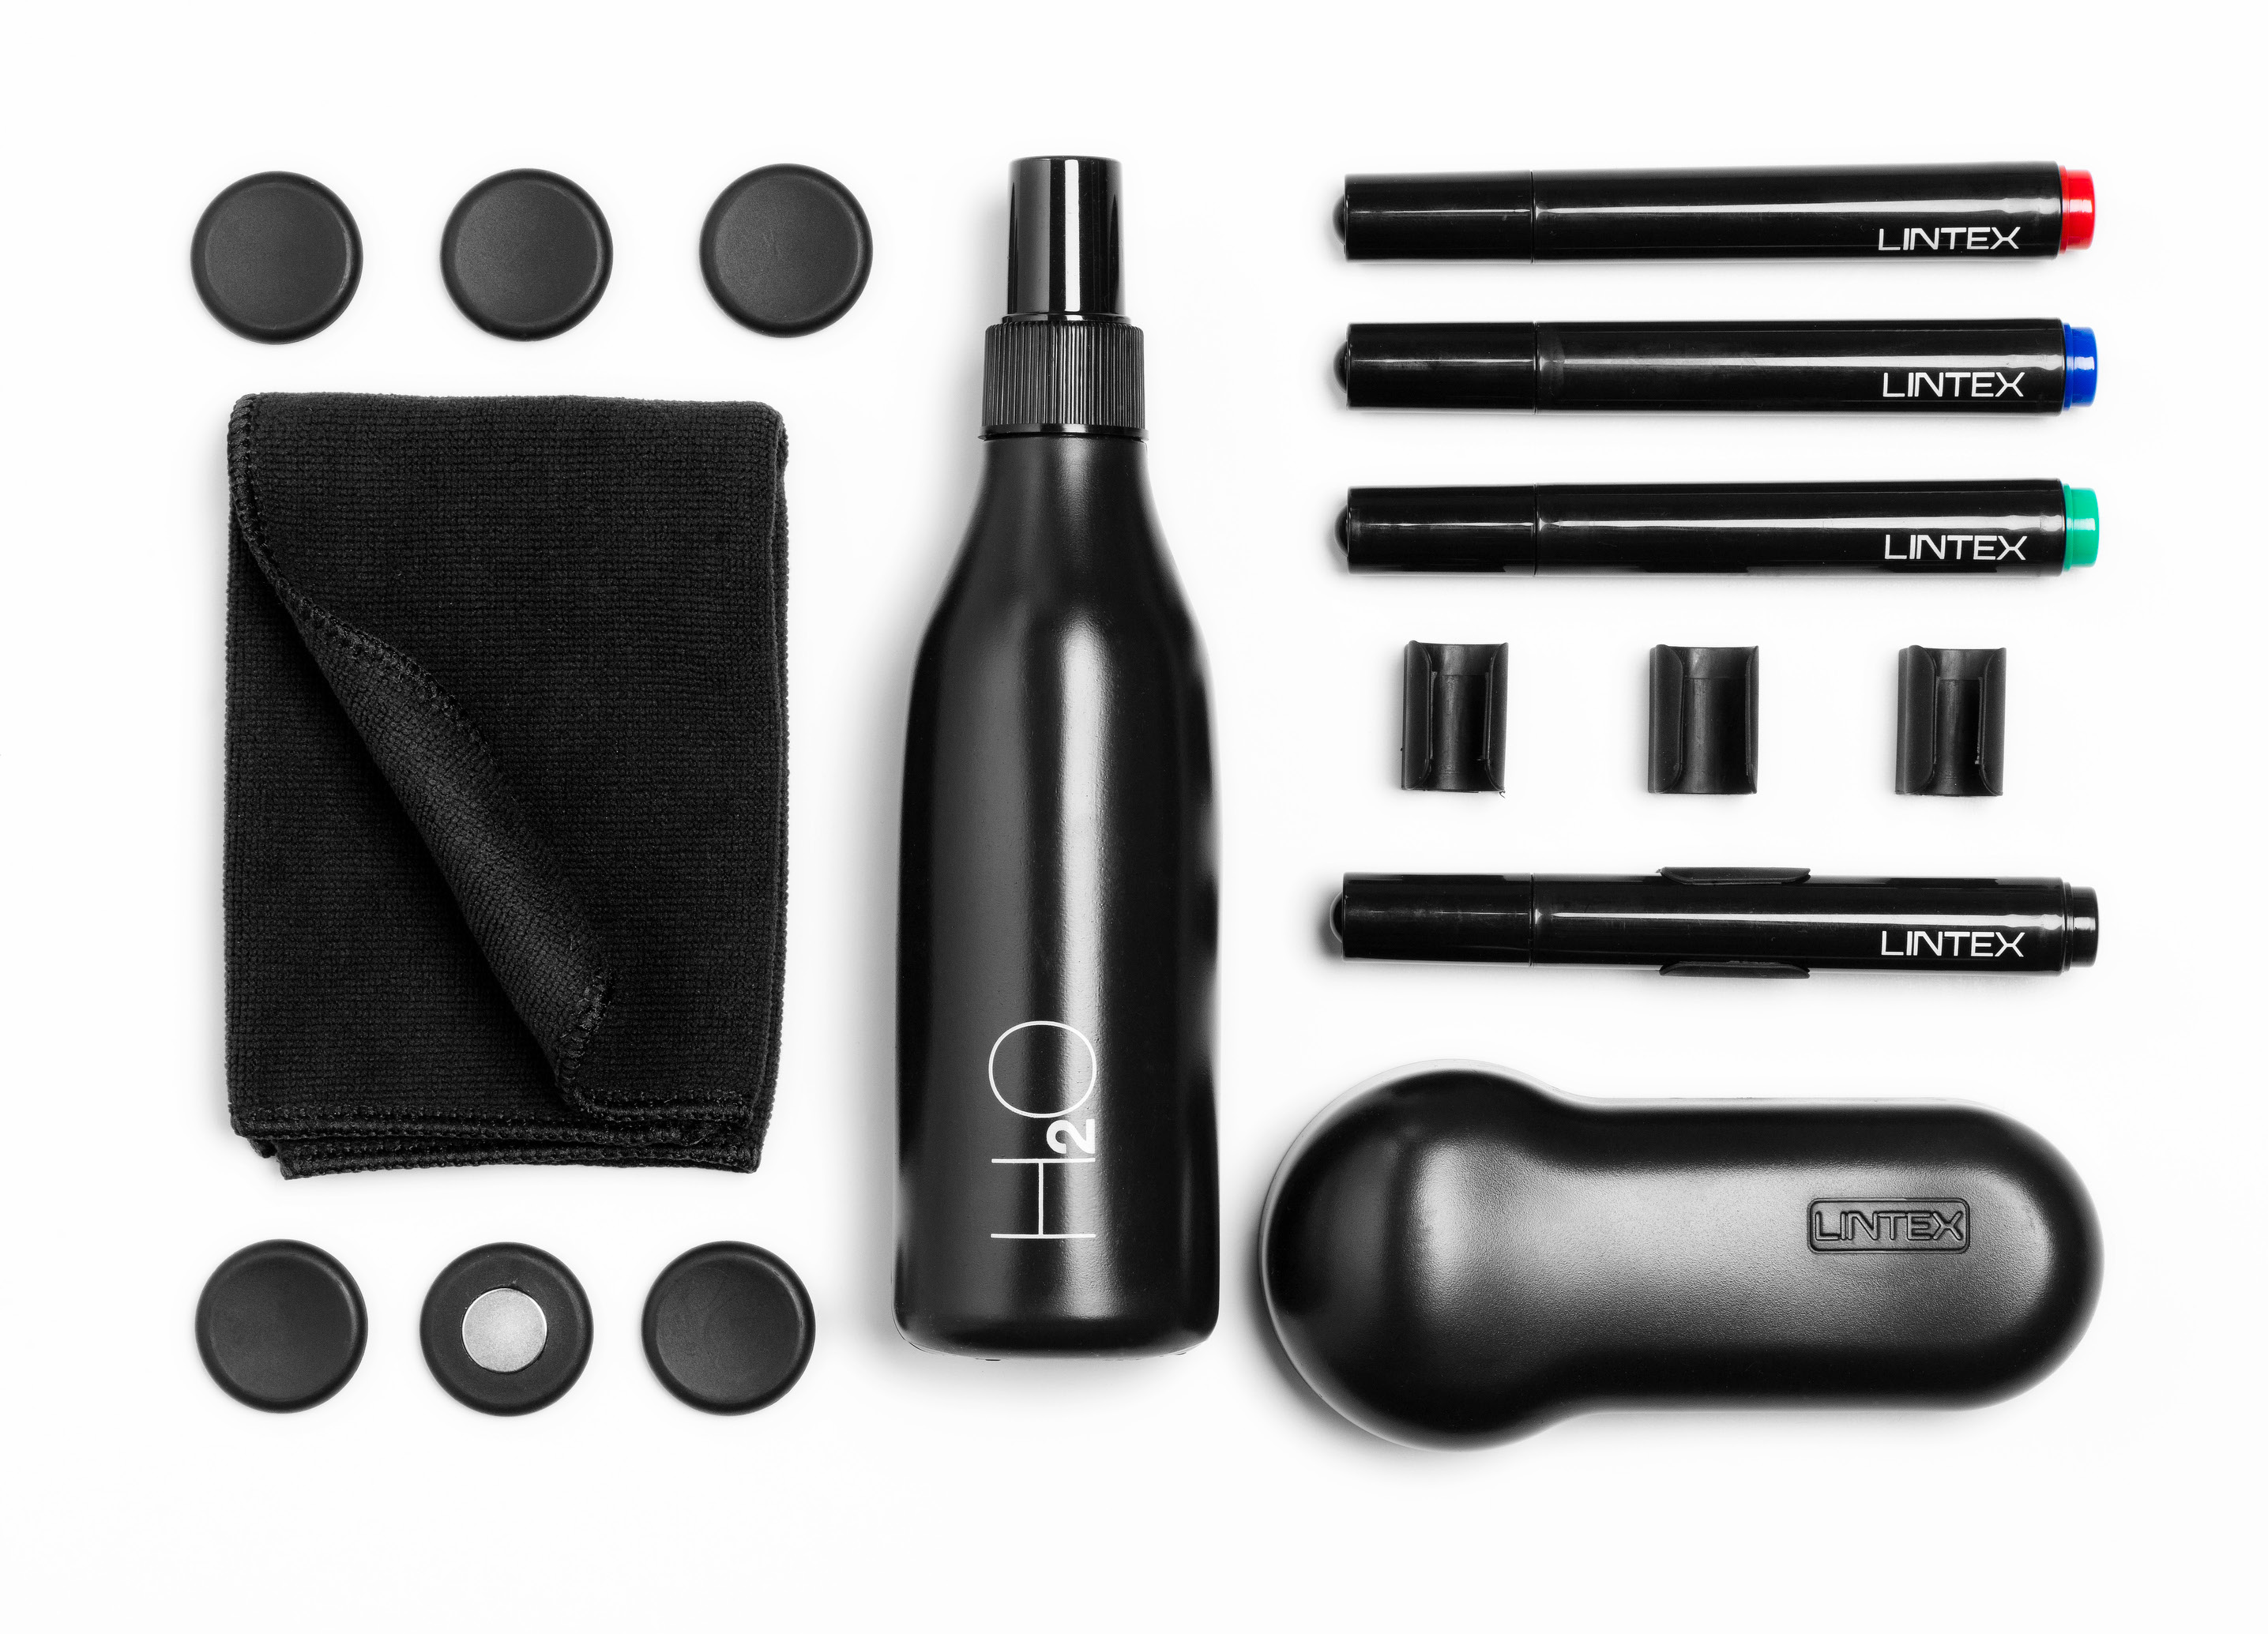 Lintex Prislista 2016 Startset Black Startset Innehåller fyra pennor, sex magneter, sprayflaska för rengöring med vatten, tavelsudd, tre filtar, en microfiberduk och fyra magnetiska singelpennhållare.